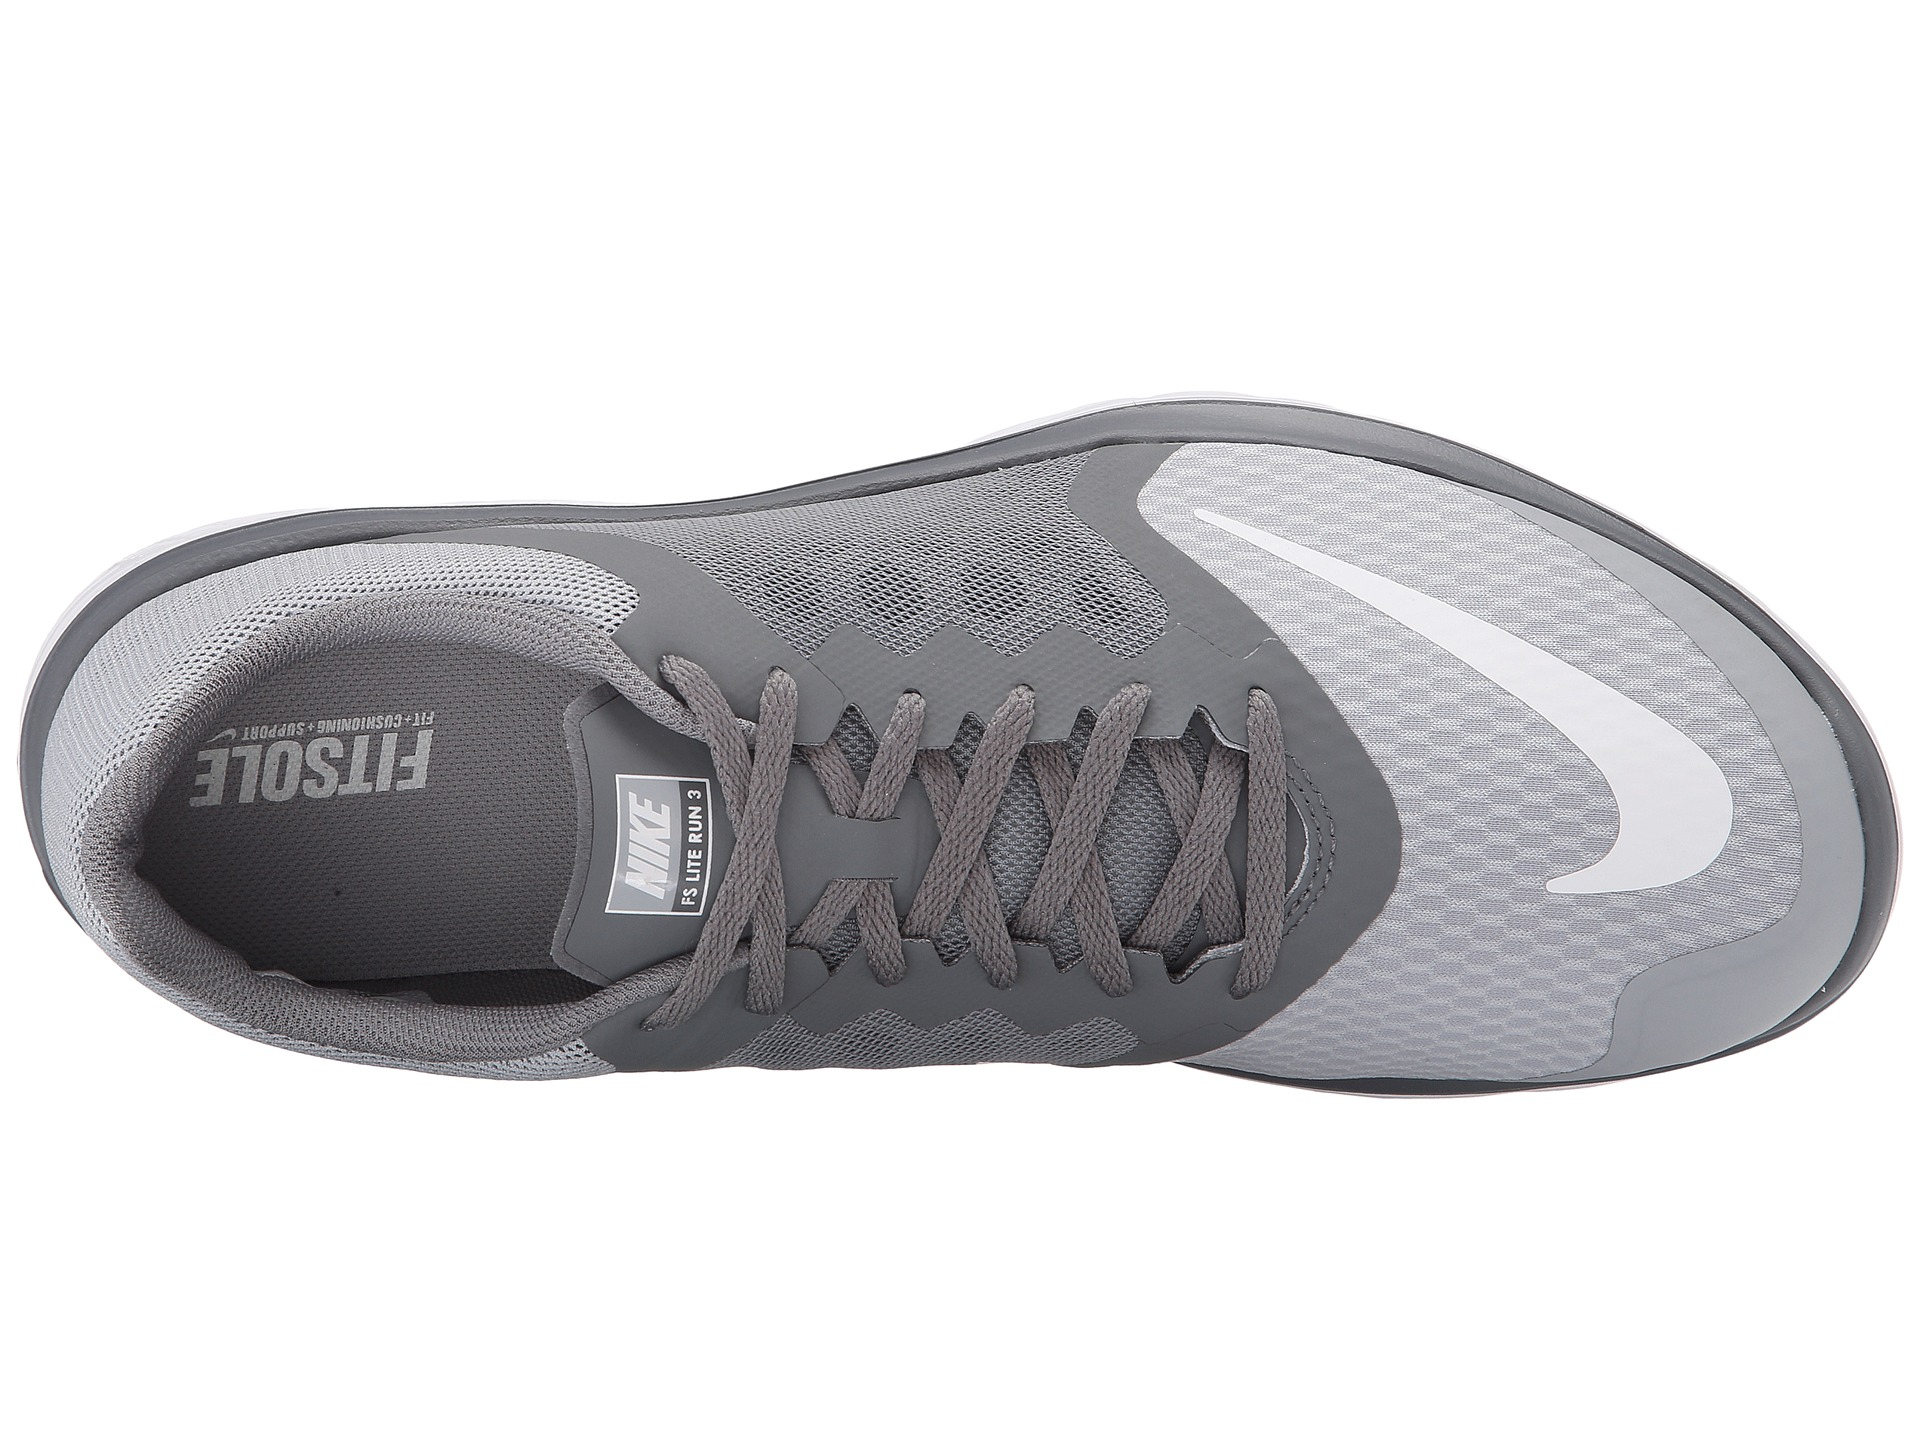 Nike Fs Lite Run 3 in Gray | Lyst